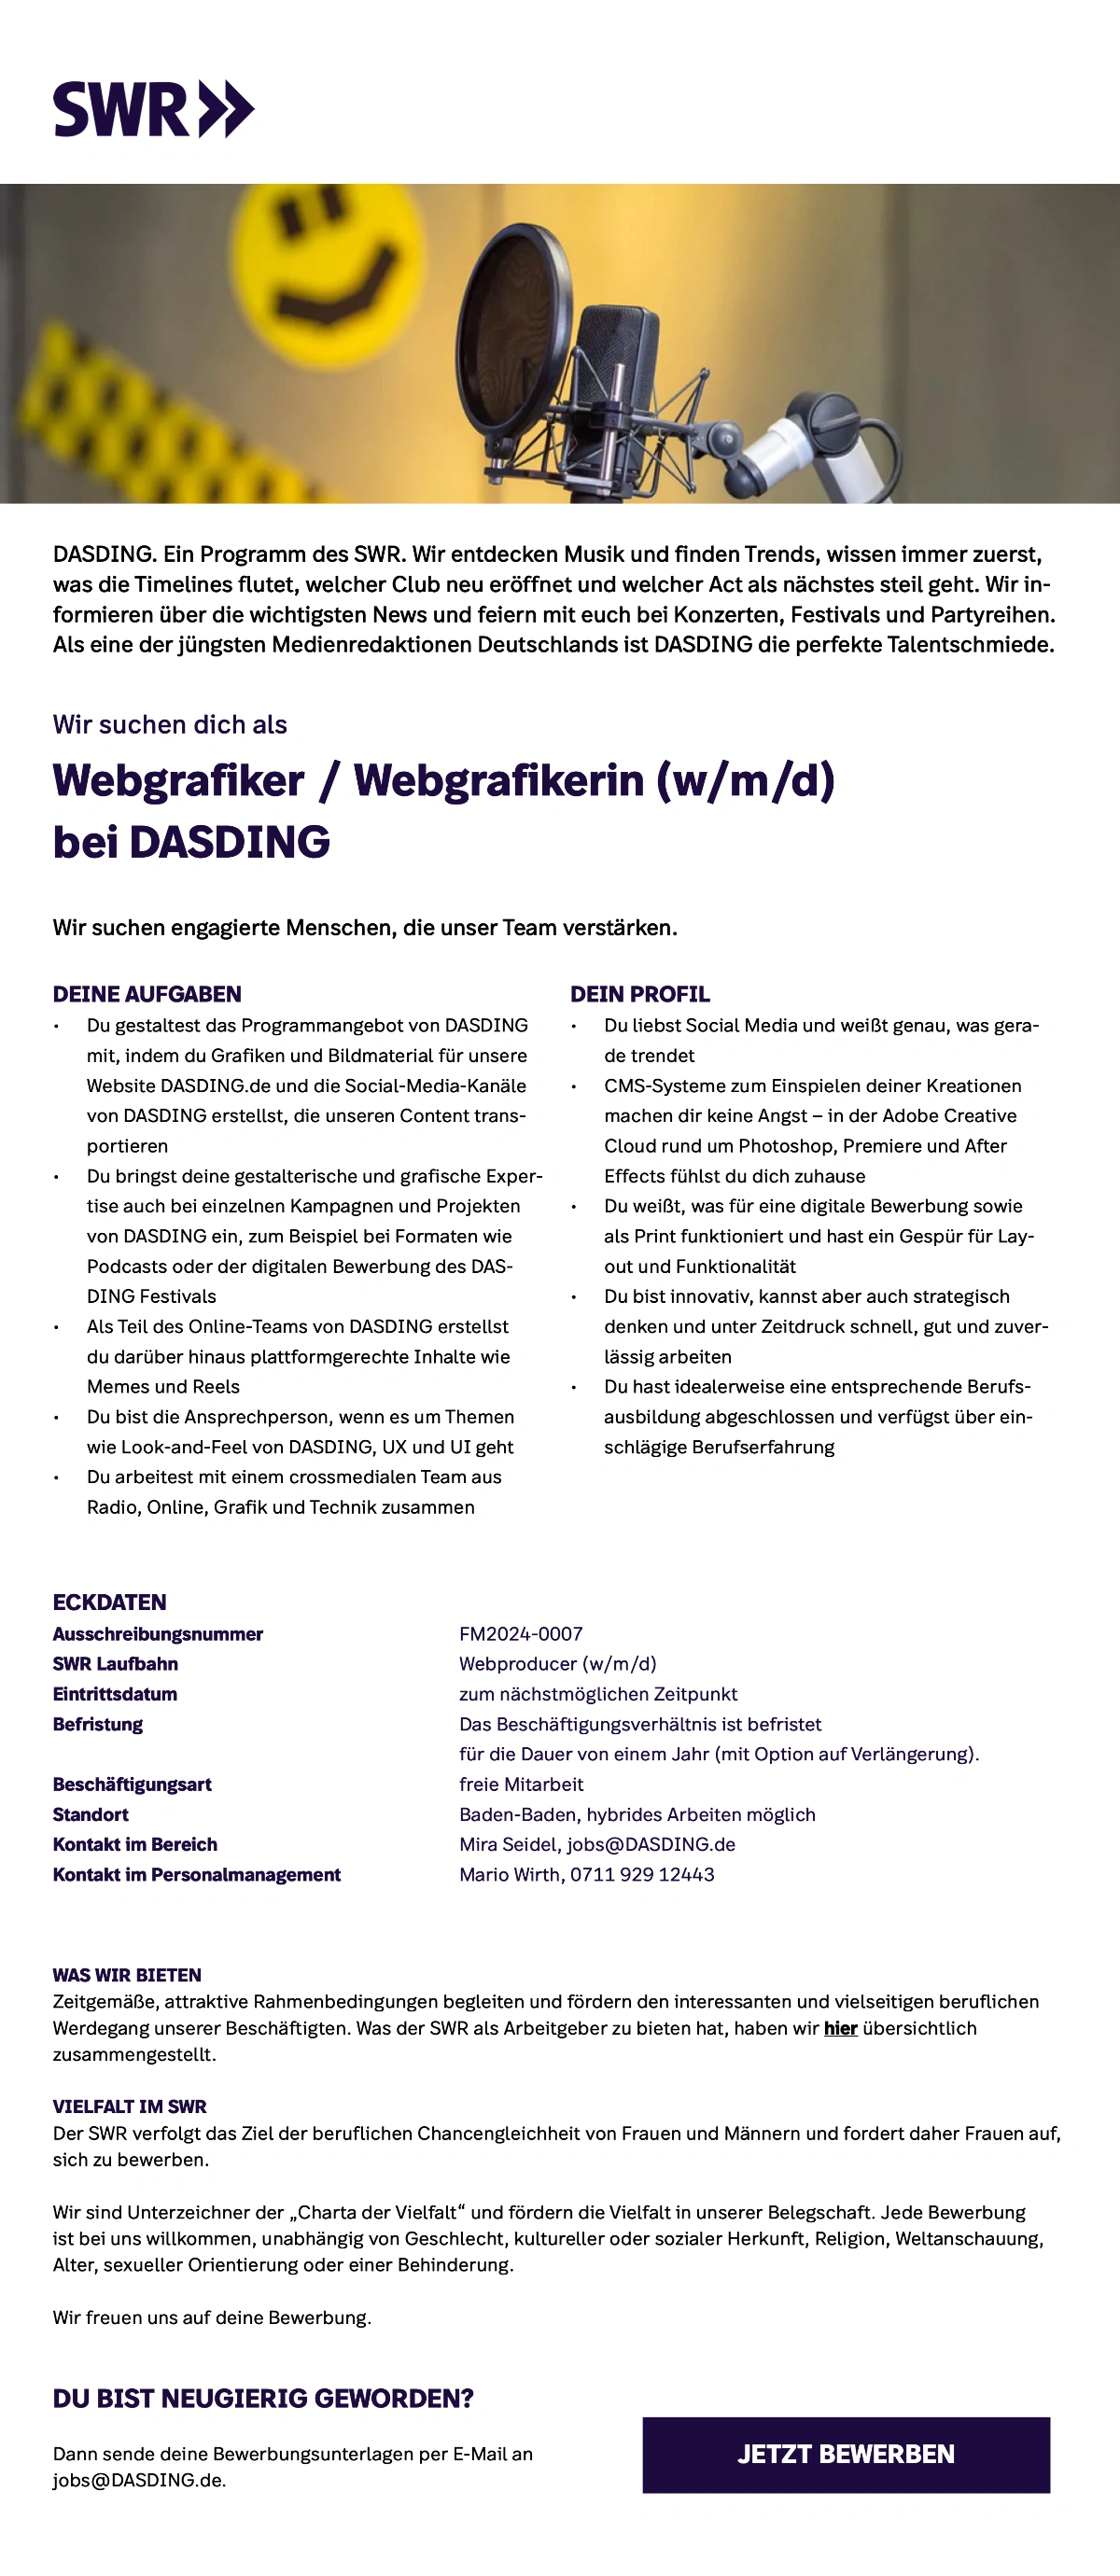 SWR sucht Webgrafiker/in (w/m/d) bei DASDING